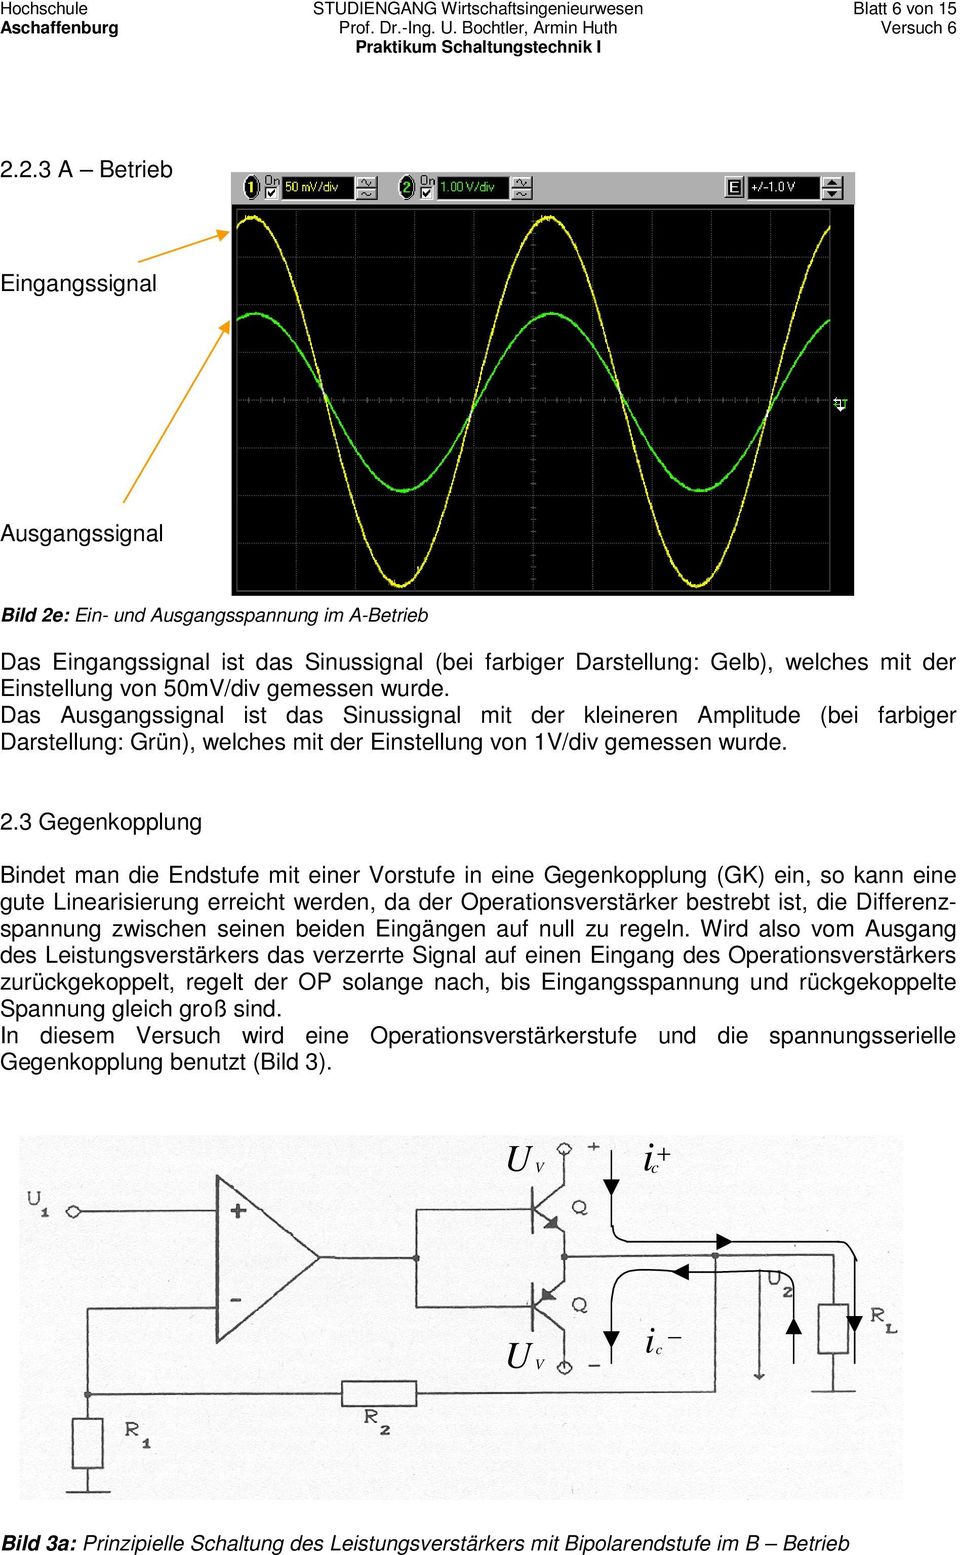 50mV/div gemessen wurde. Das Ausgangssignal ist das Sinussignal mit der kleineren Amplitude (bei farbiger Darstellung: Grün), welches mit der Einstellung von 1V/div gemessen wurde.